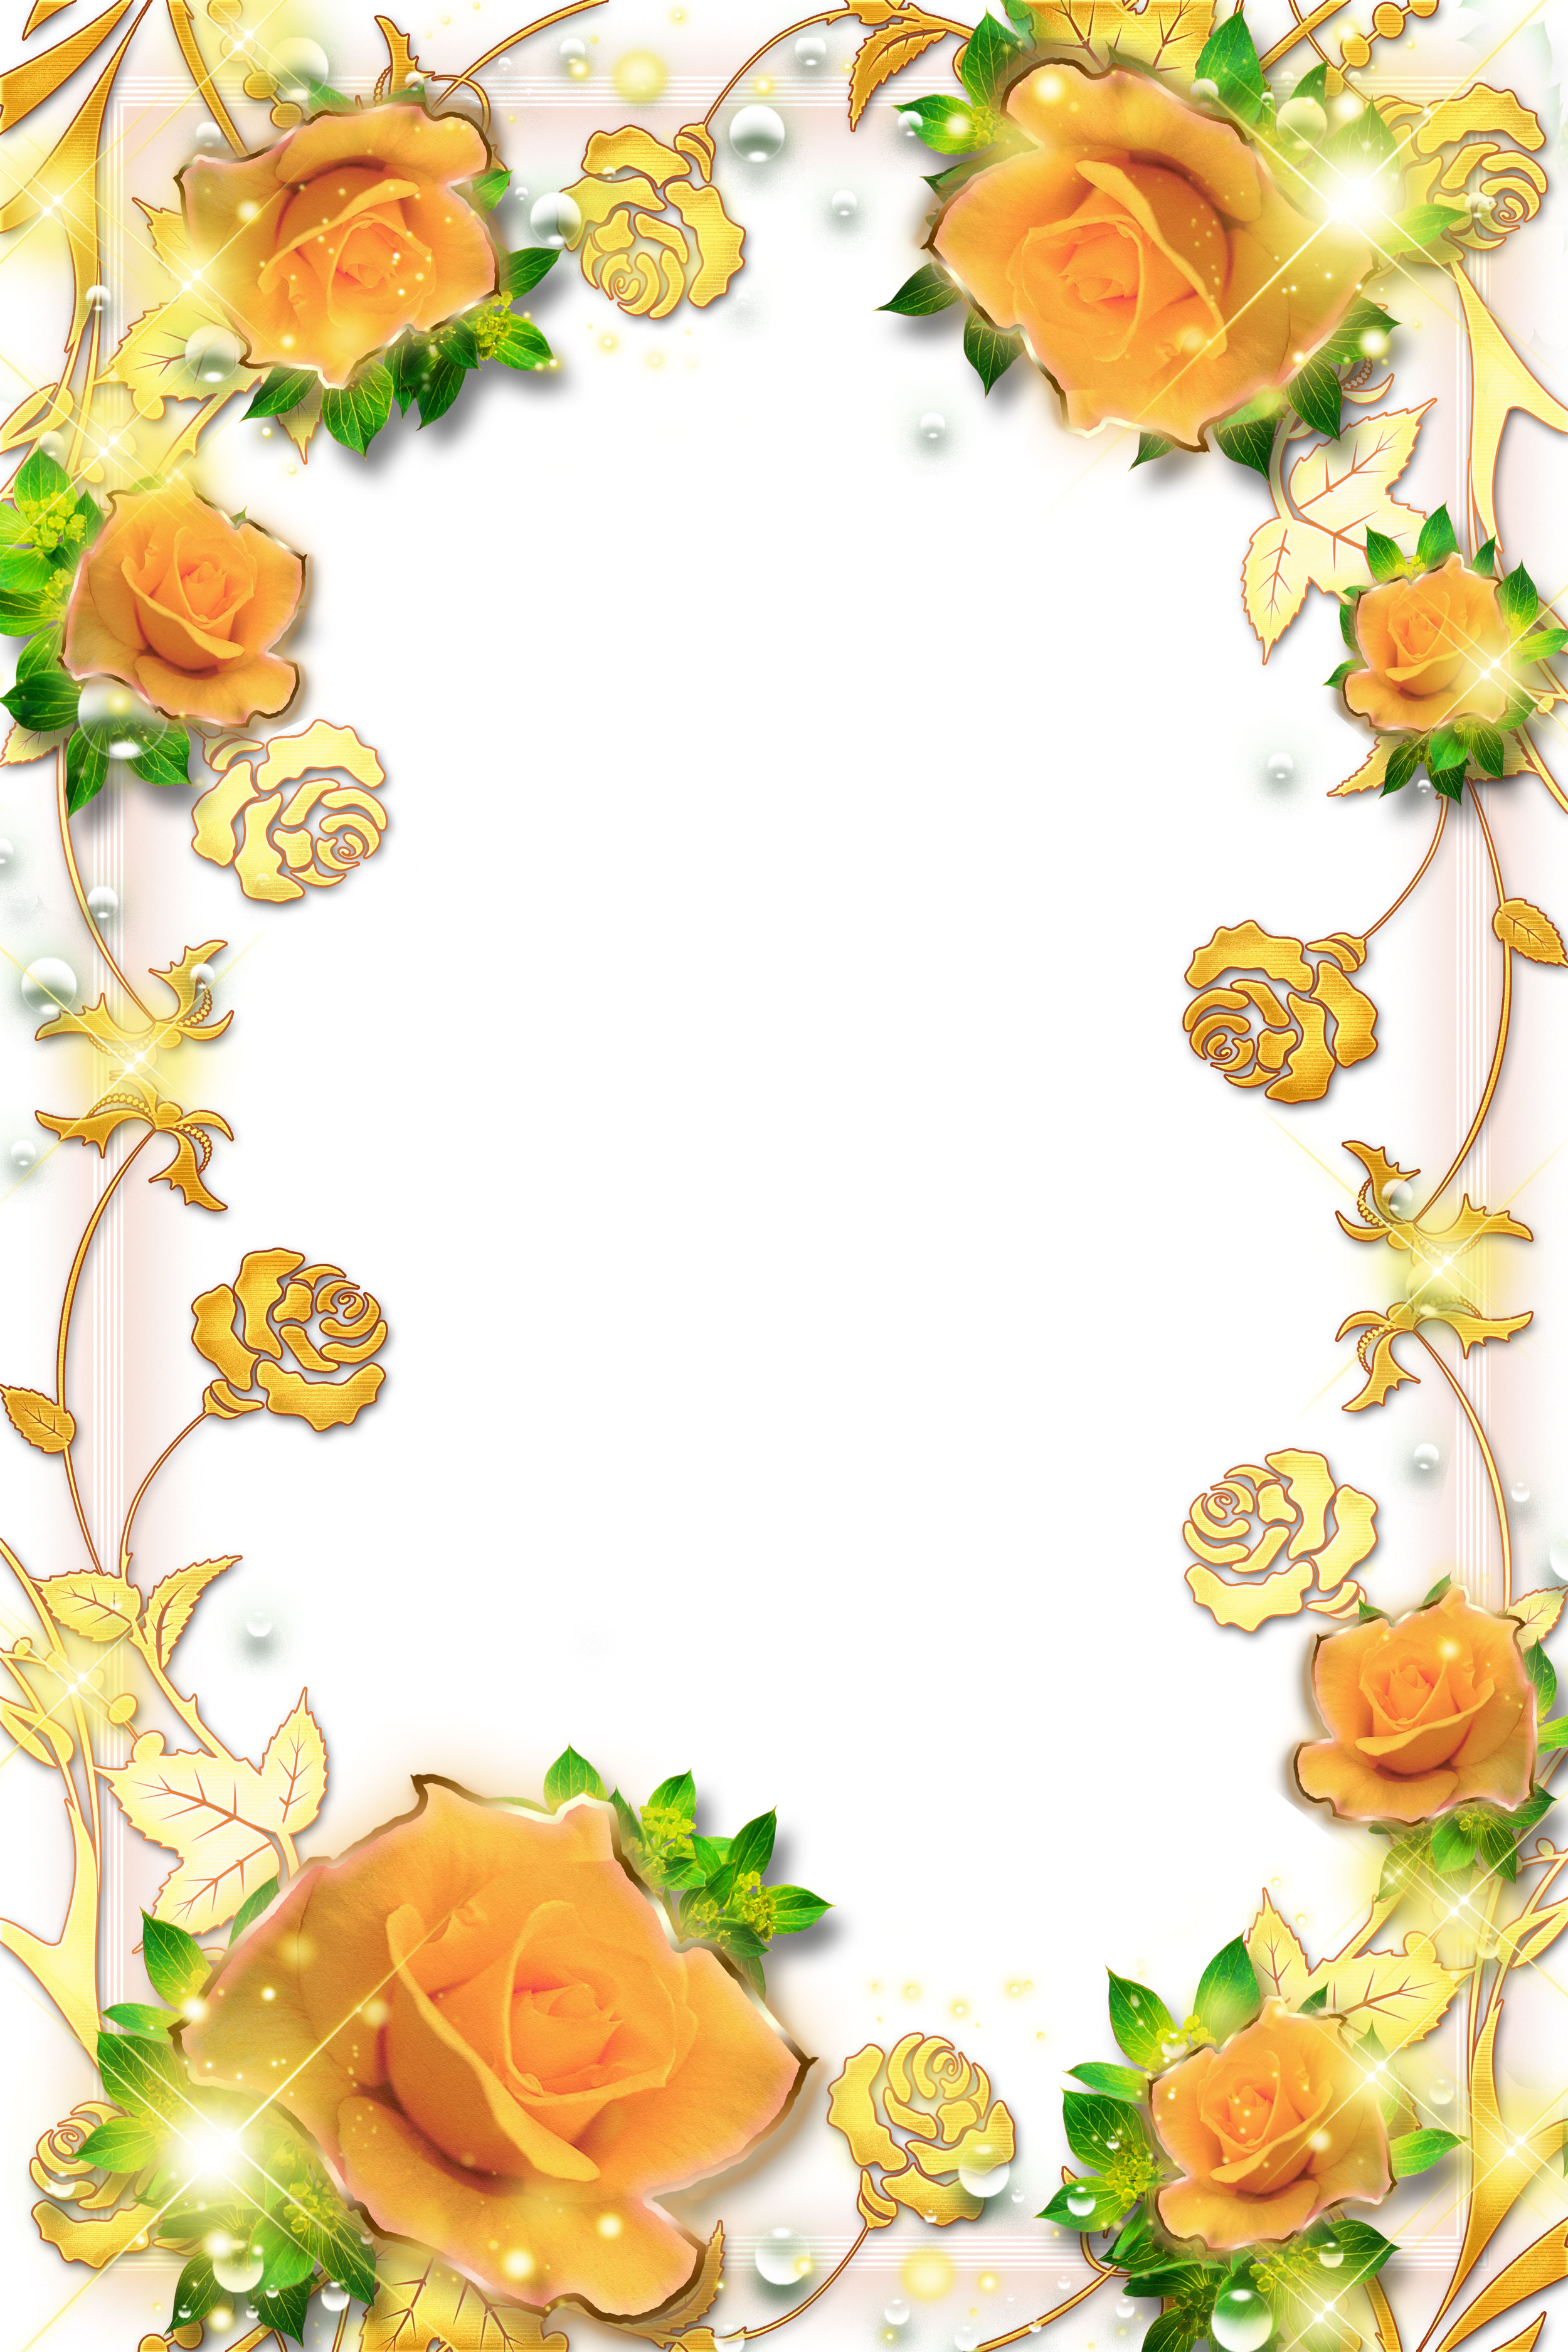 壁紙 背景イラスト 花のフレーム 外枠 No 080 オレンジのバラ 金色